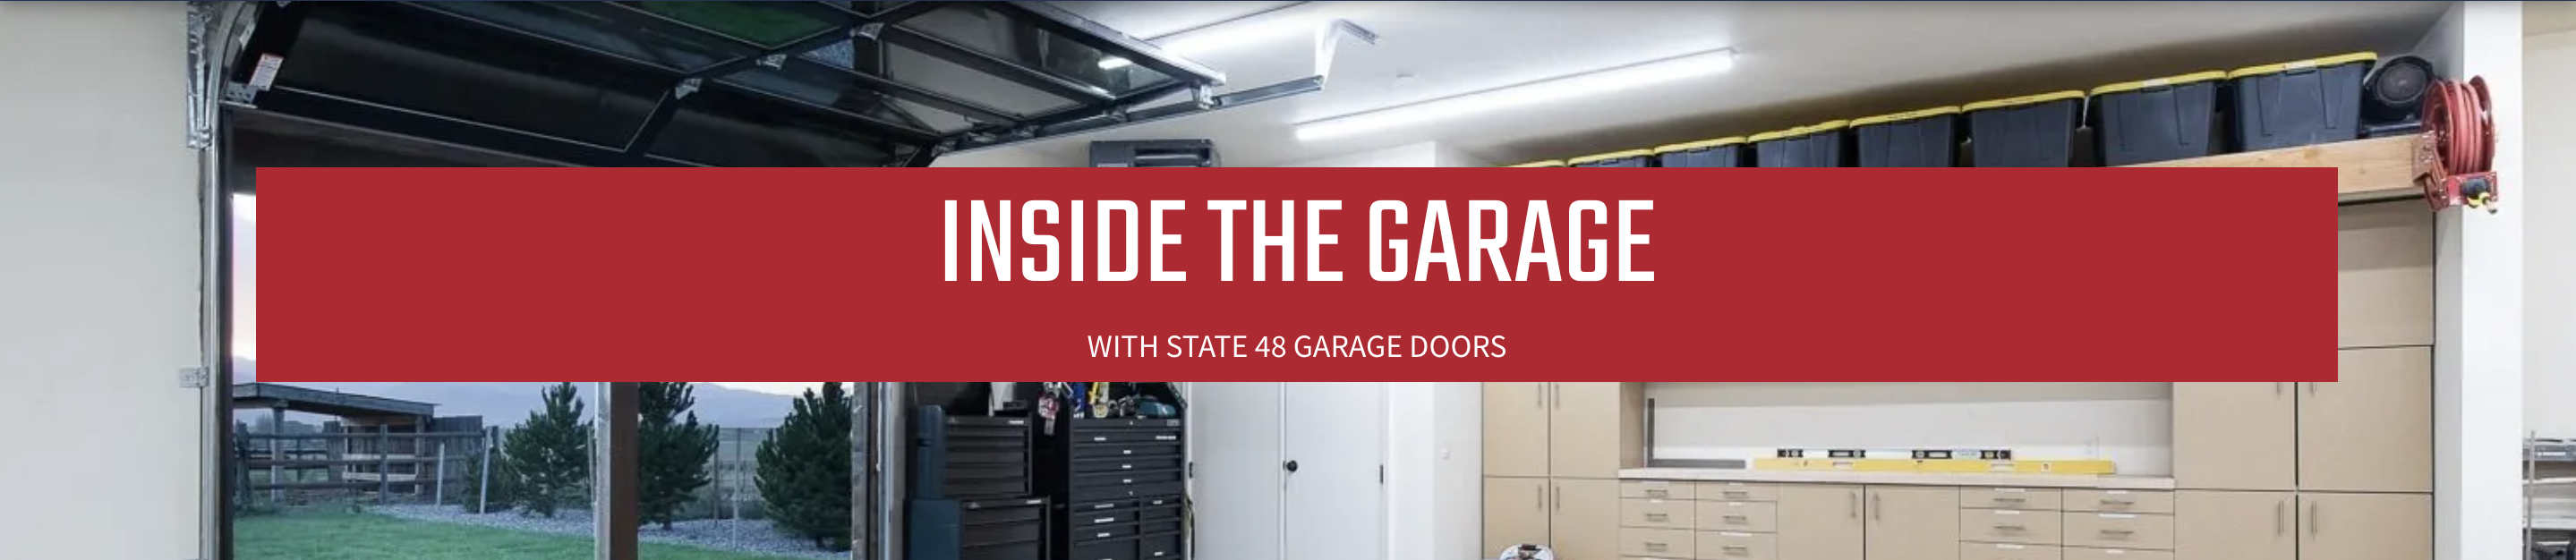 Garage Door Spring Repair Cost